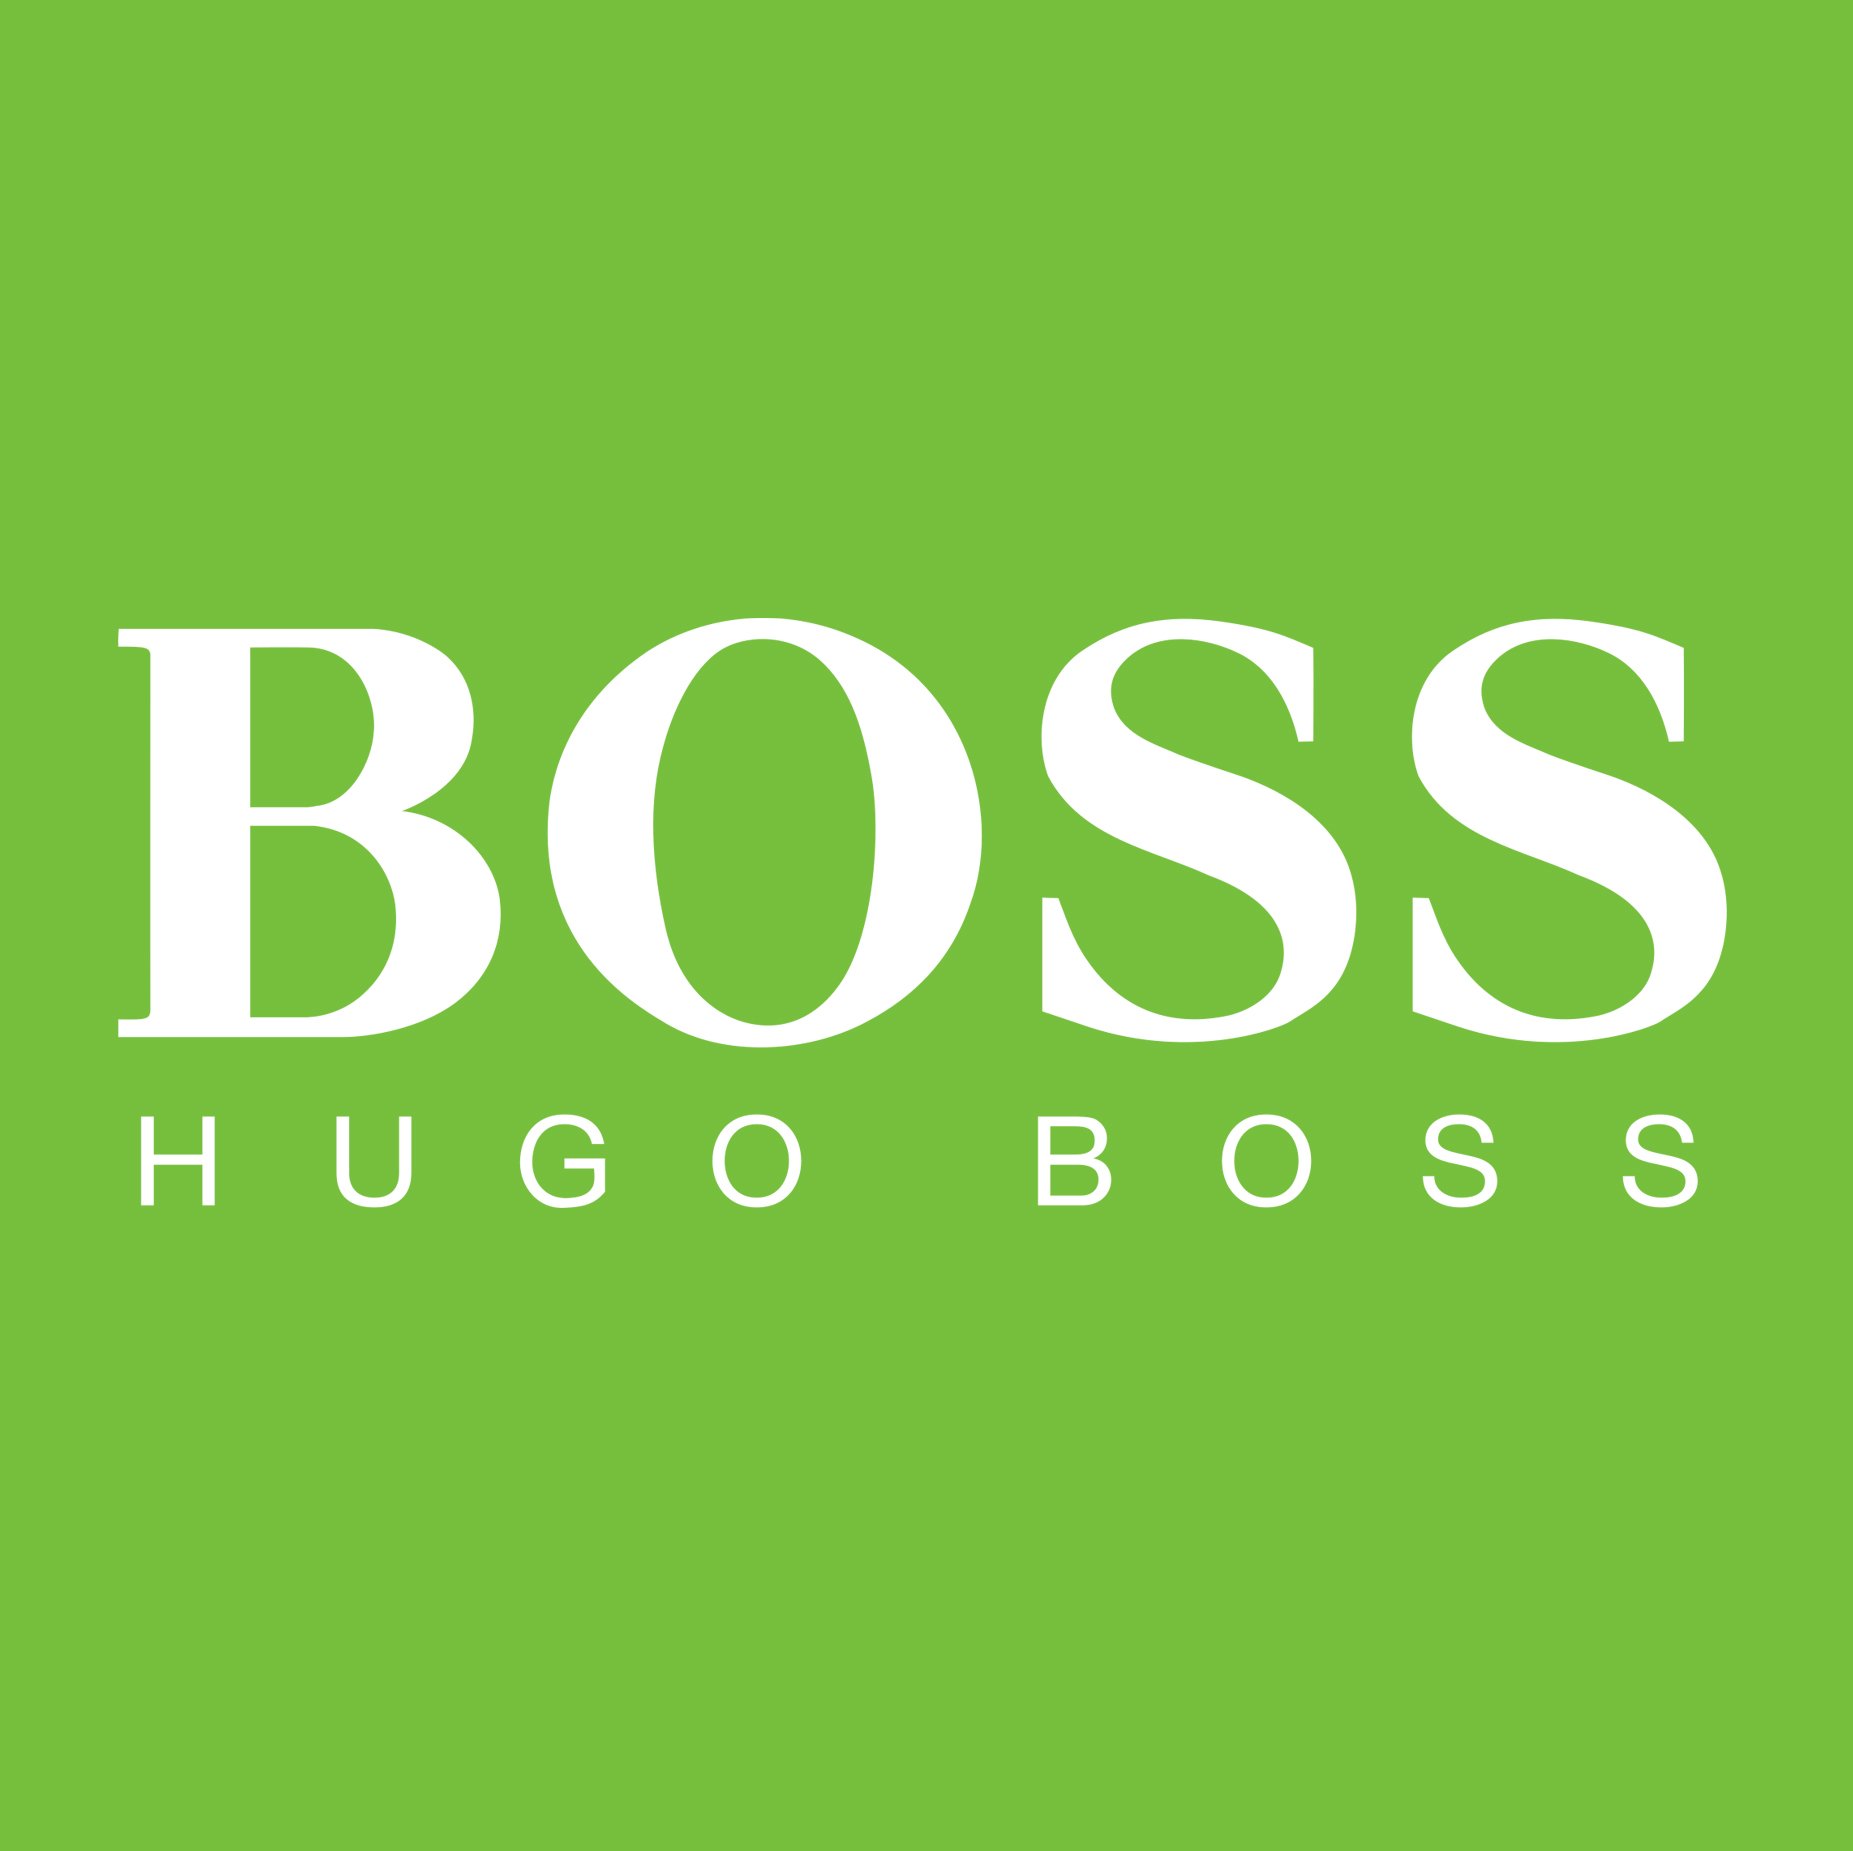 Boss картинка. Логотип фирмы босс. Хуго босс эмблема. Духи босс логотип. Hugo босс лейбл.